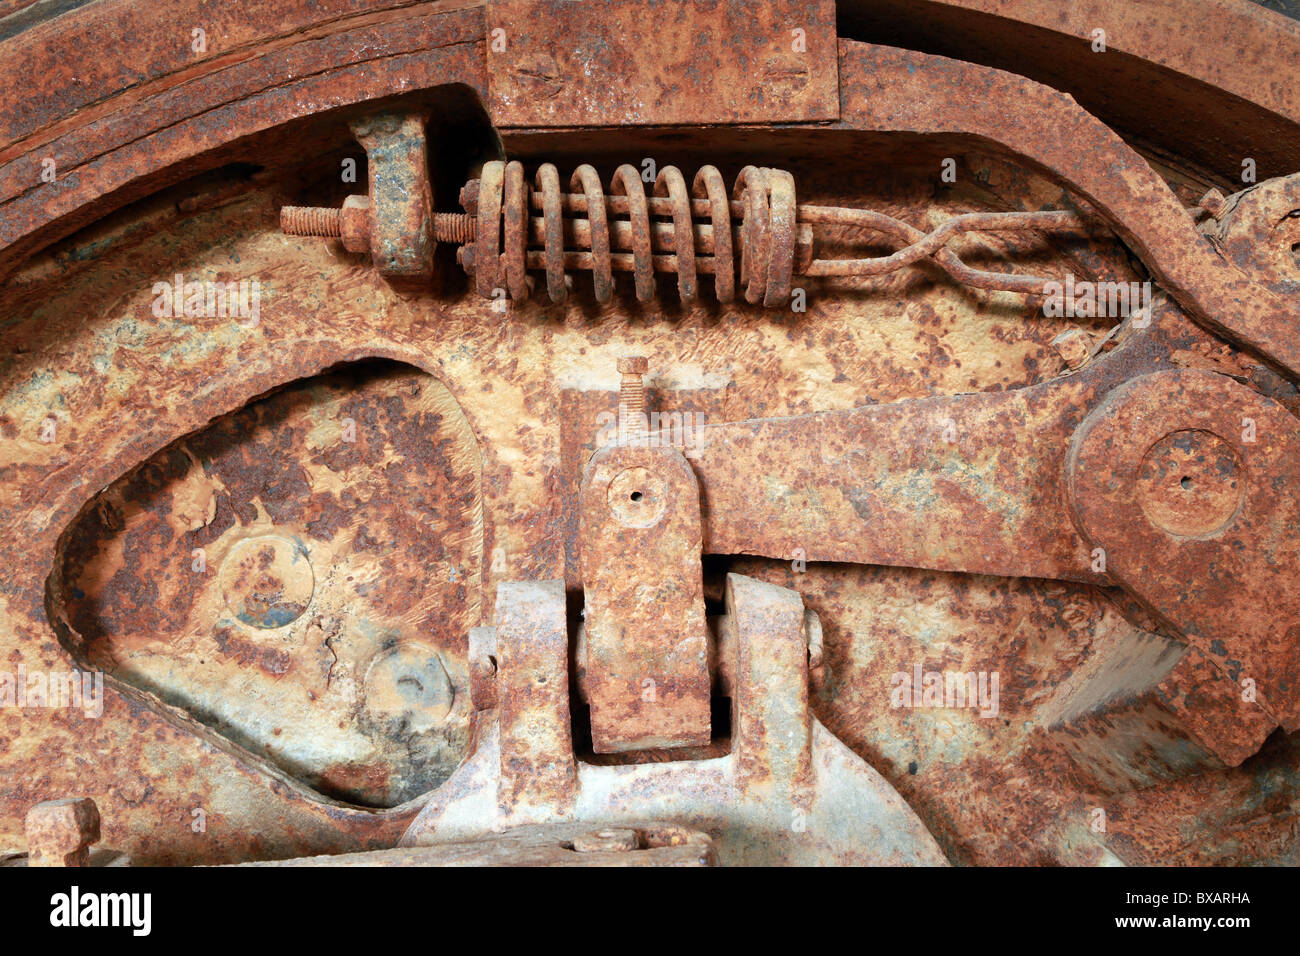 Nahaufnahme von verrosteten Industrieanlagen, antik, alt, baufällig, Maschinen auf einem gold Dredge in Dawson City, Yukon, Kanada. Stockfoto